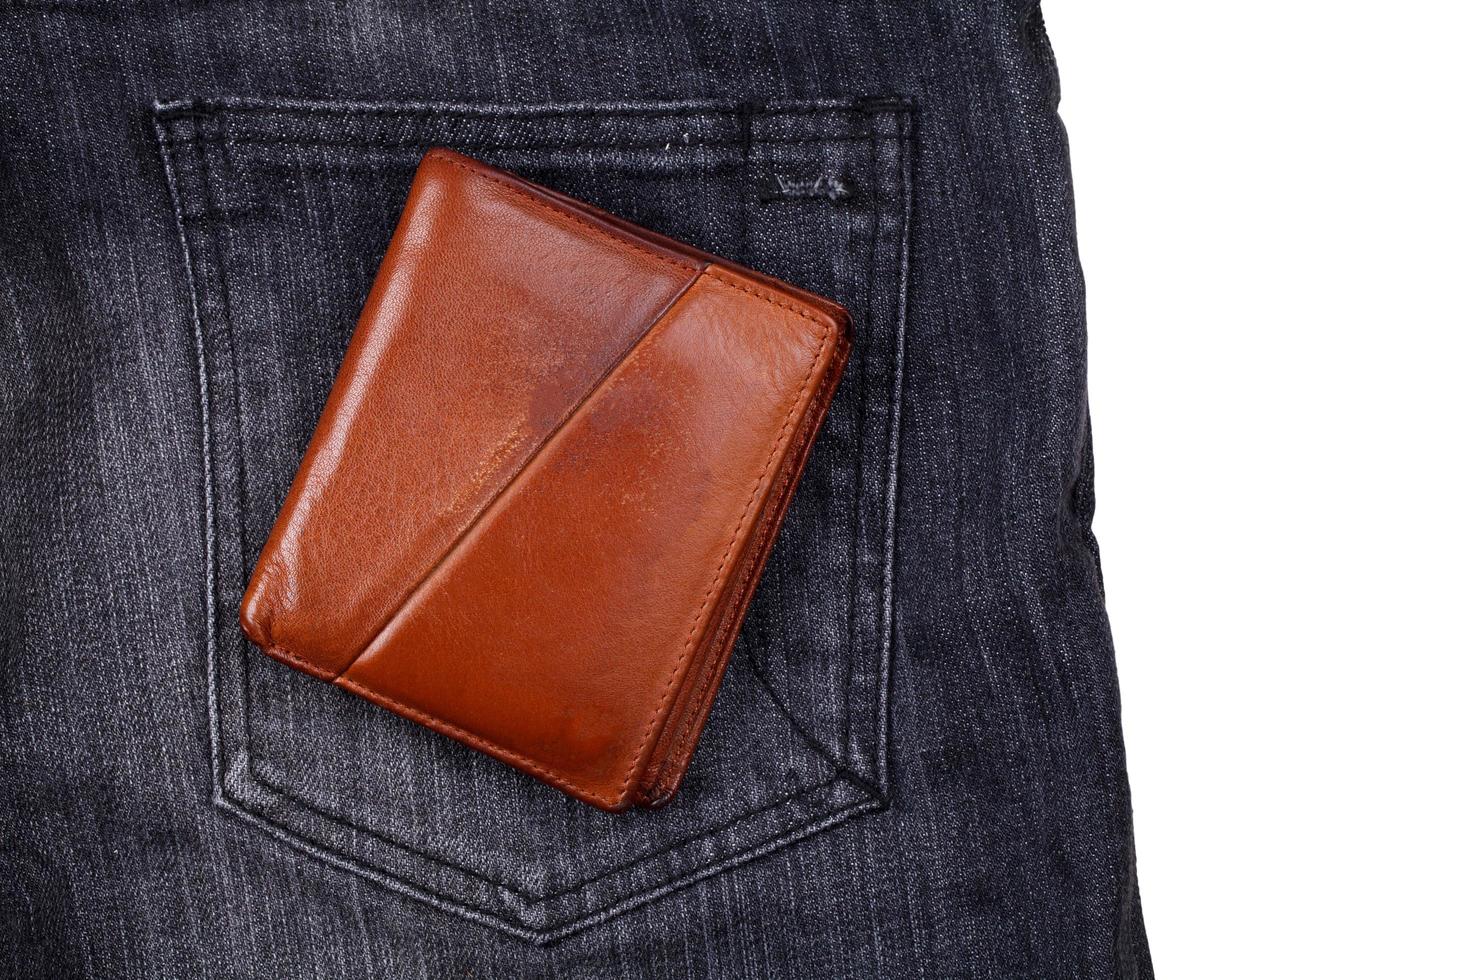 portefeuille marron sur jean noir photo